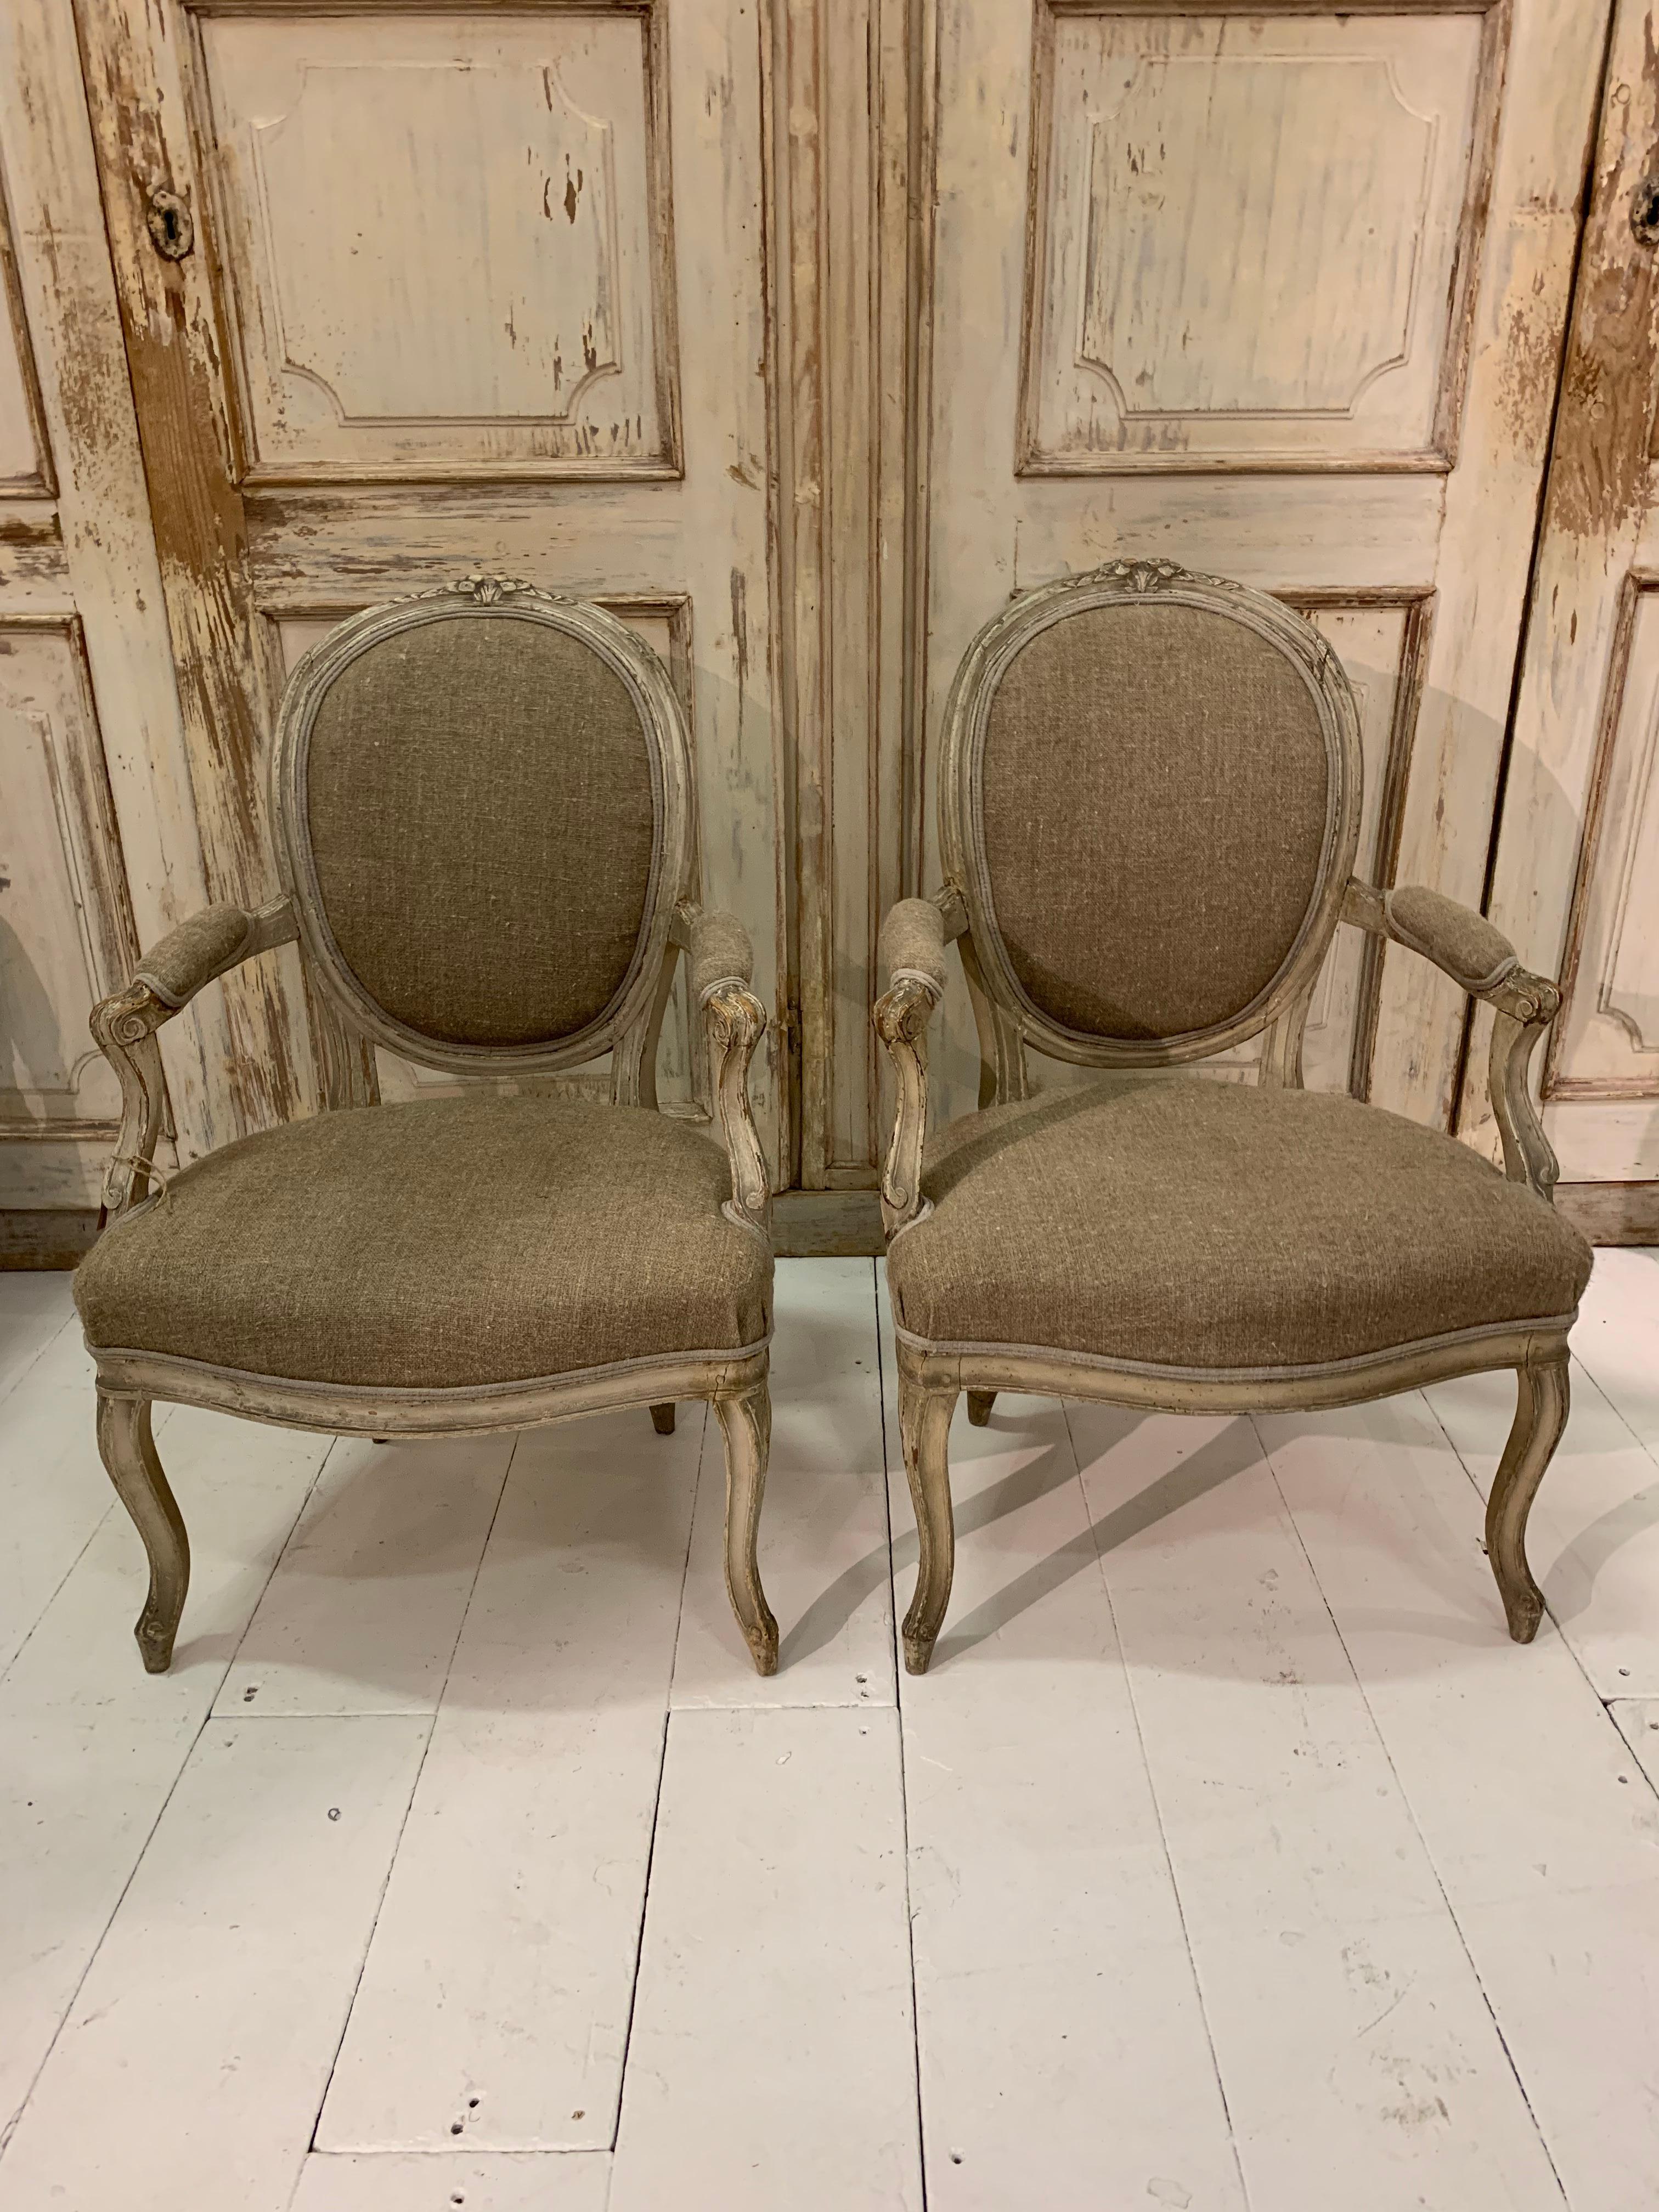 Une belle paire de fauteuils ouverts français de la fin du 19e siècle, avec des détails sculptés et une peinture d'origine.
Les fauteuils ont été recouverts de lin hongrois et conviendraient parfaitement à une paire de chaises d'appoint